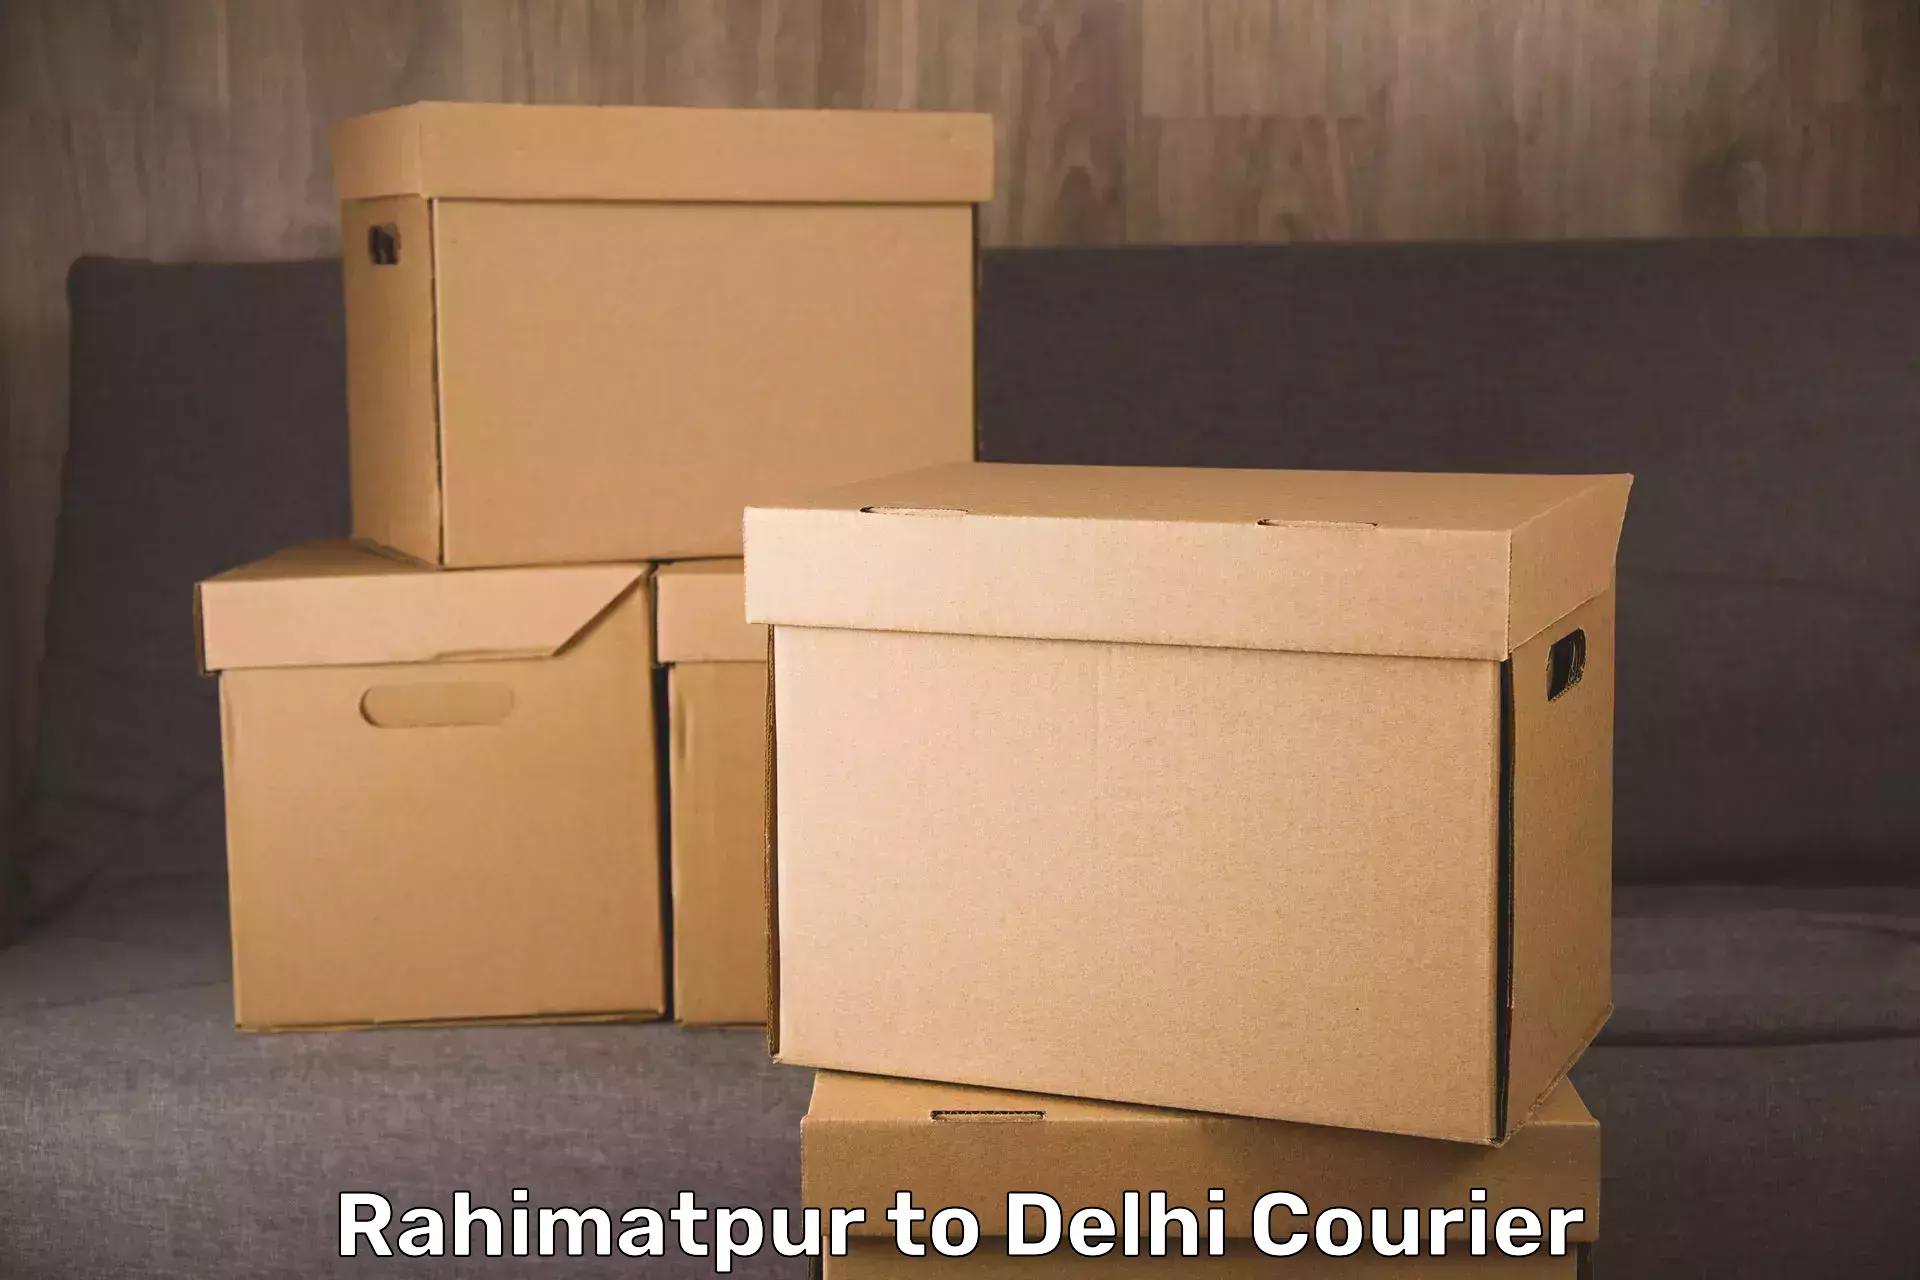 Luggage transfer service Rahimatpur to Jamia Millia Islamia New Delhi